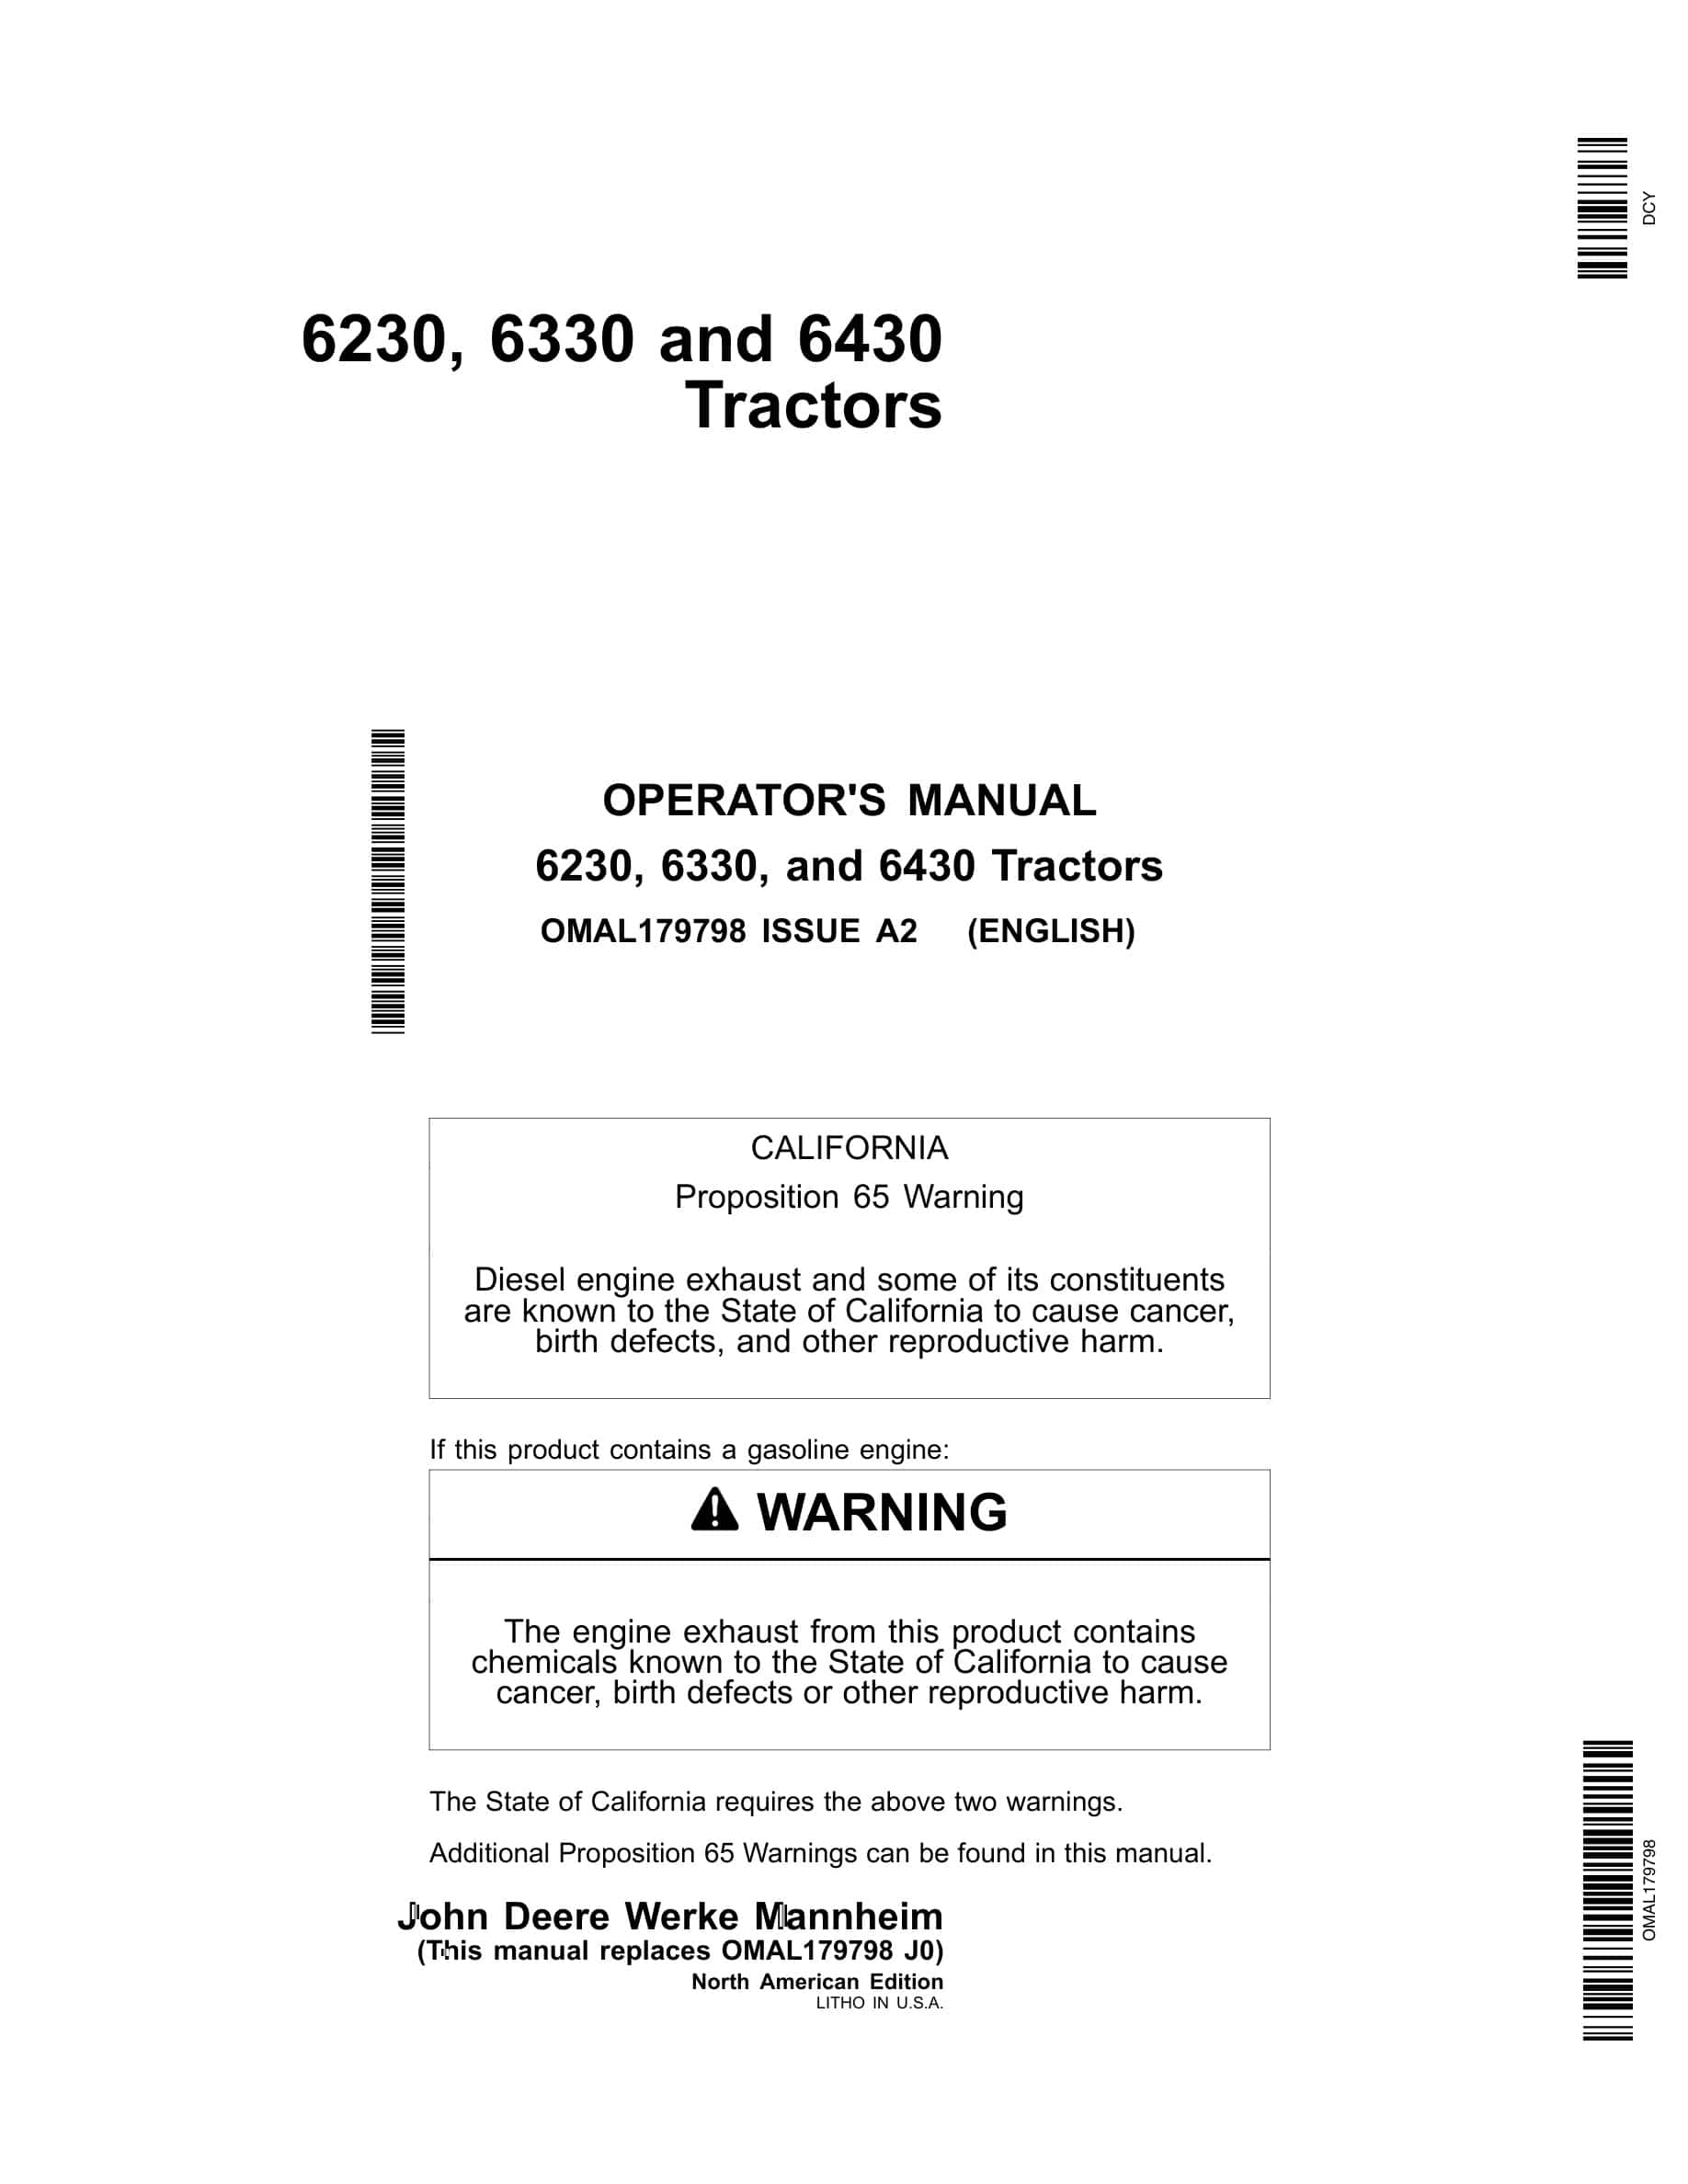 John Deere 6230, 6330, and 6430 Tractor Operator Manual OMAL179798-1